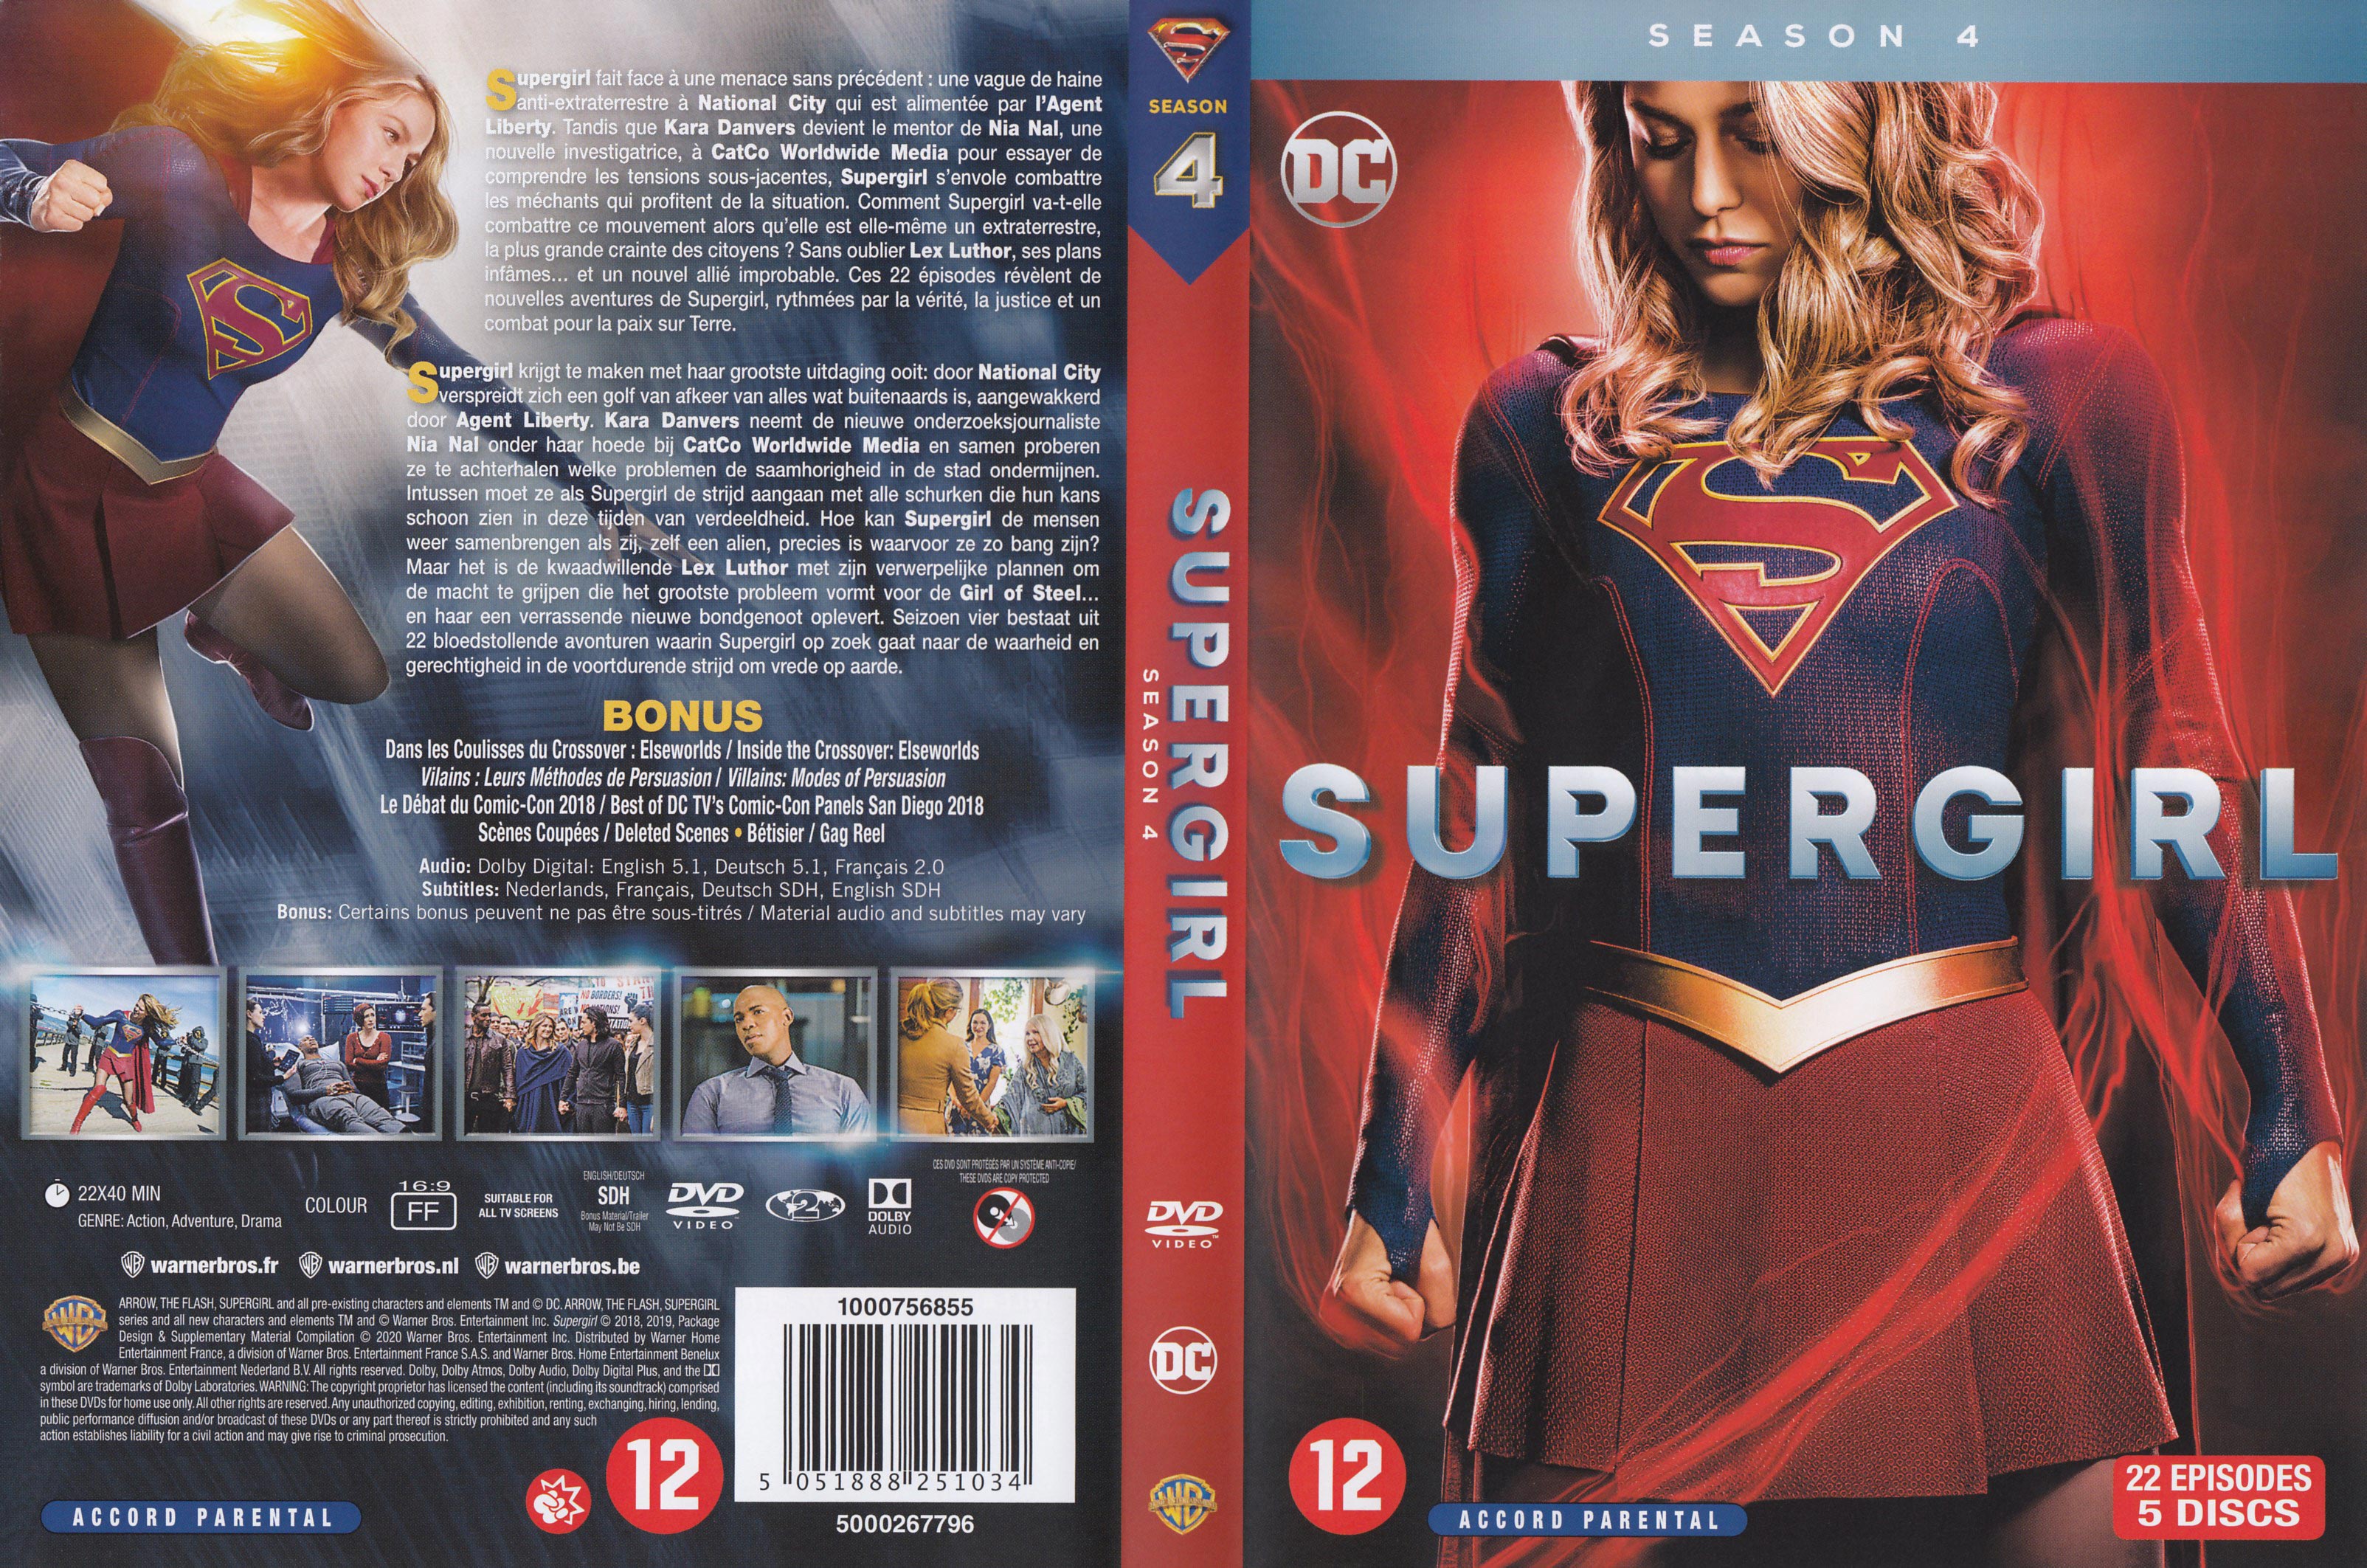 Jaquette DVD SuperGirl saison 4